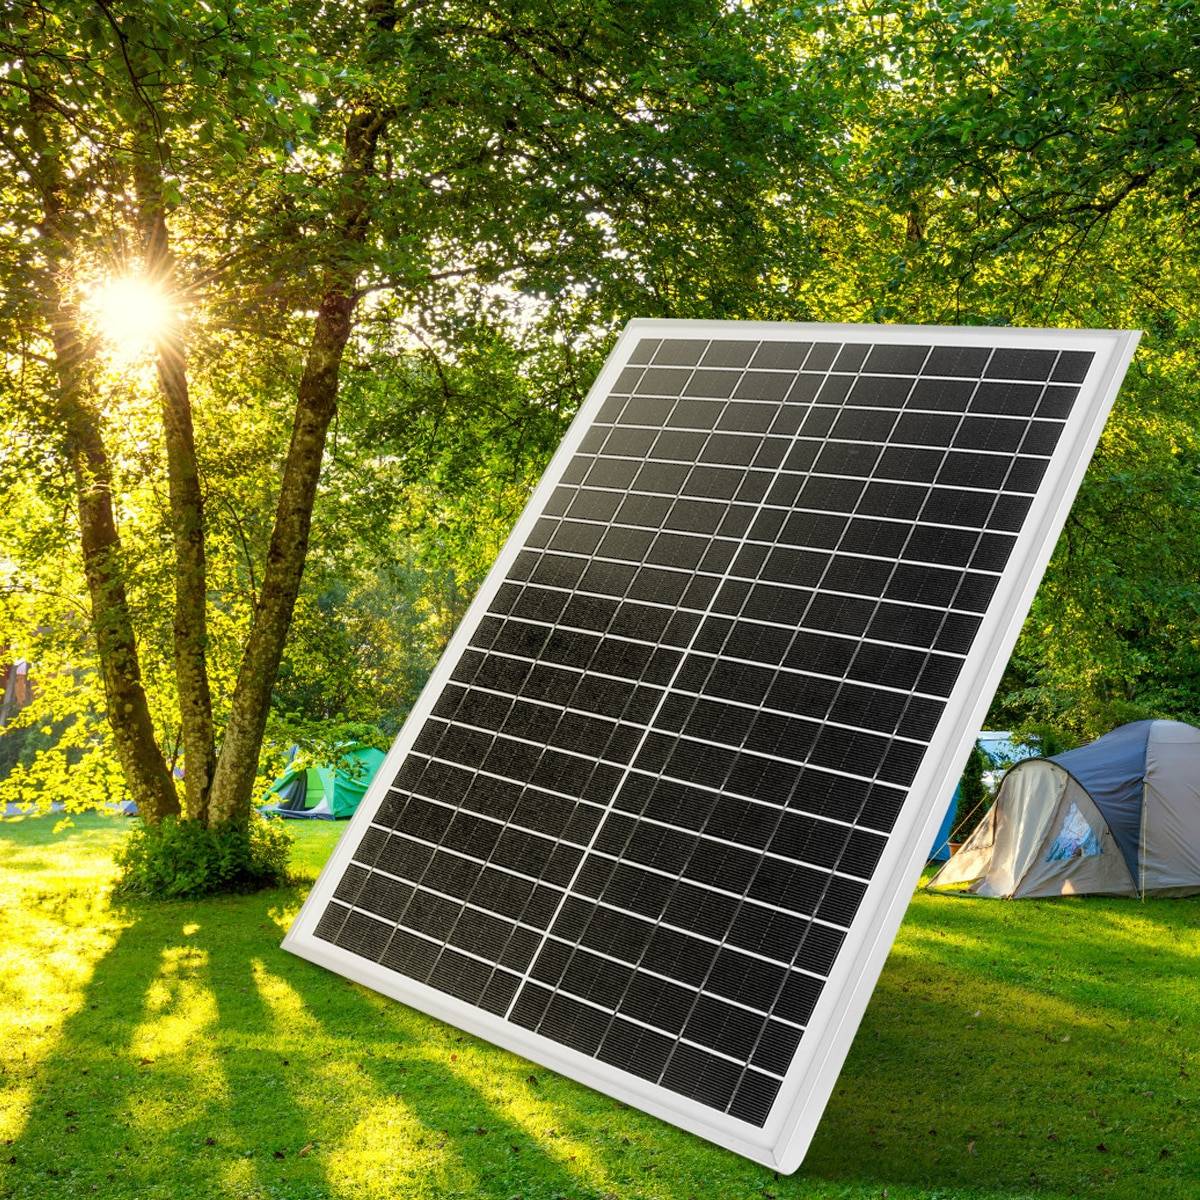 Топ-10 производителей солнечных панелей в 2021 году (обновлено 2021) • solarpanel.today